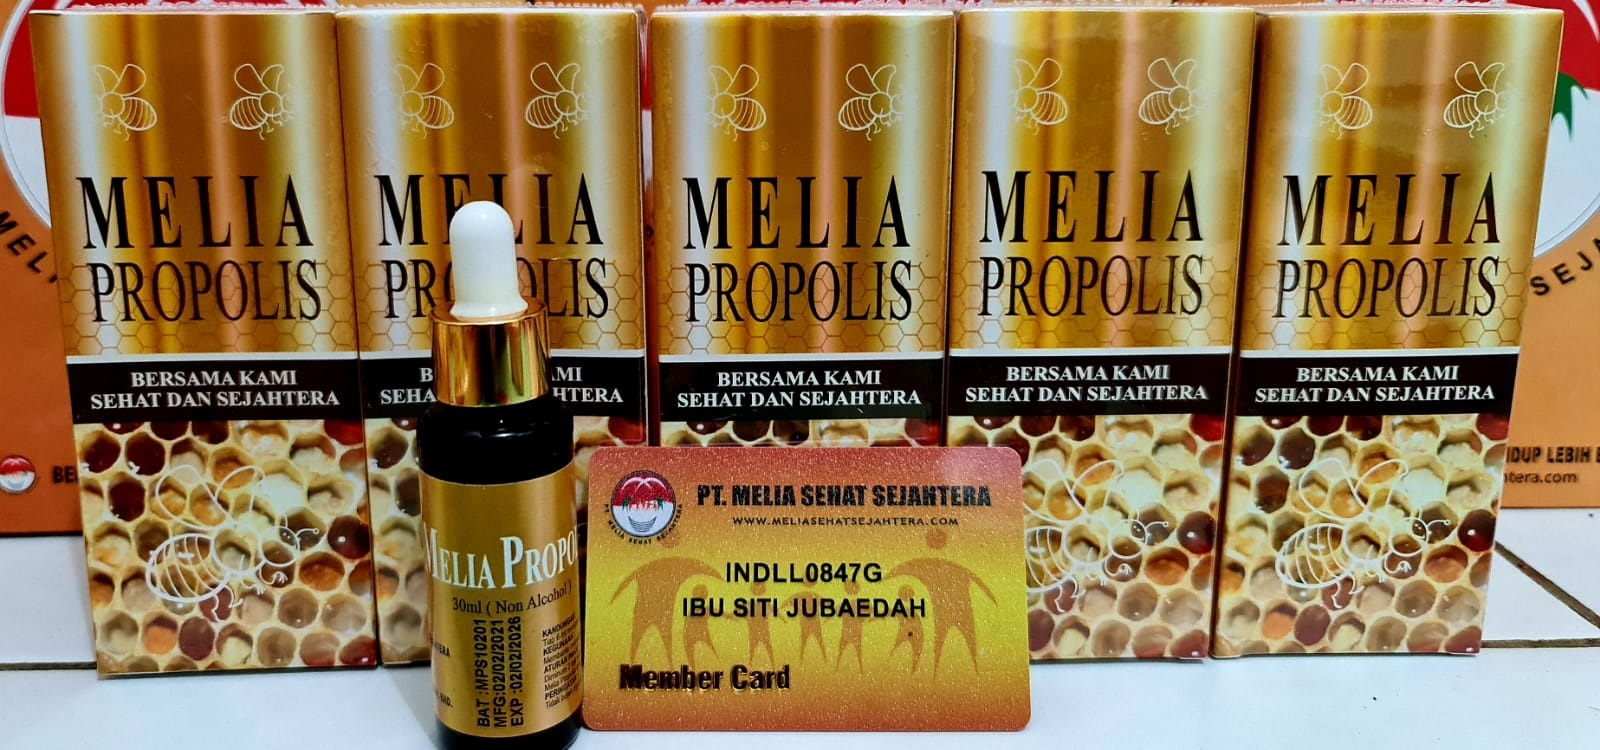 melia propolis 30ml